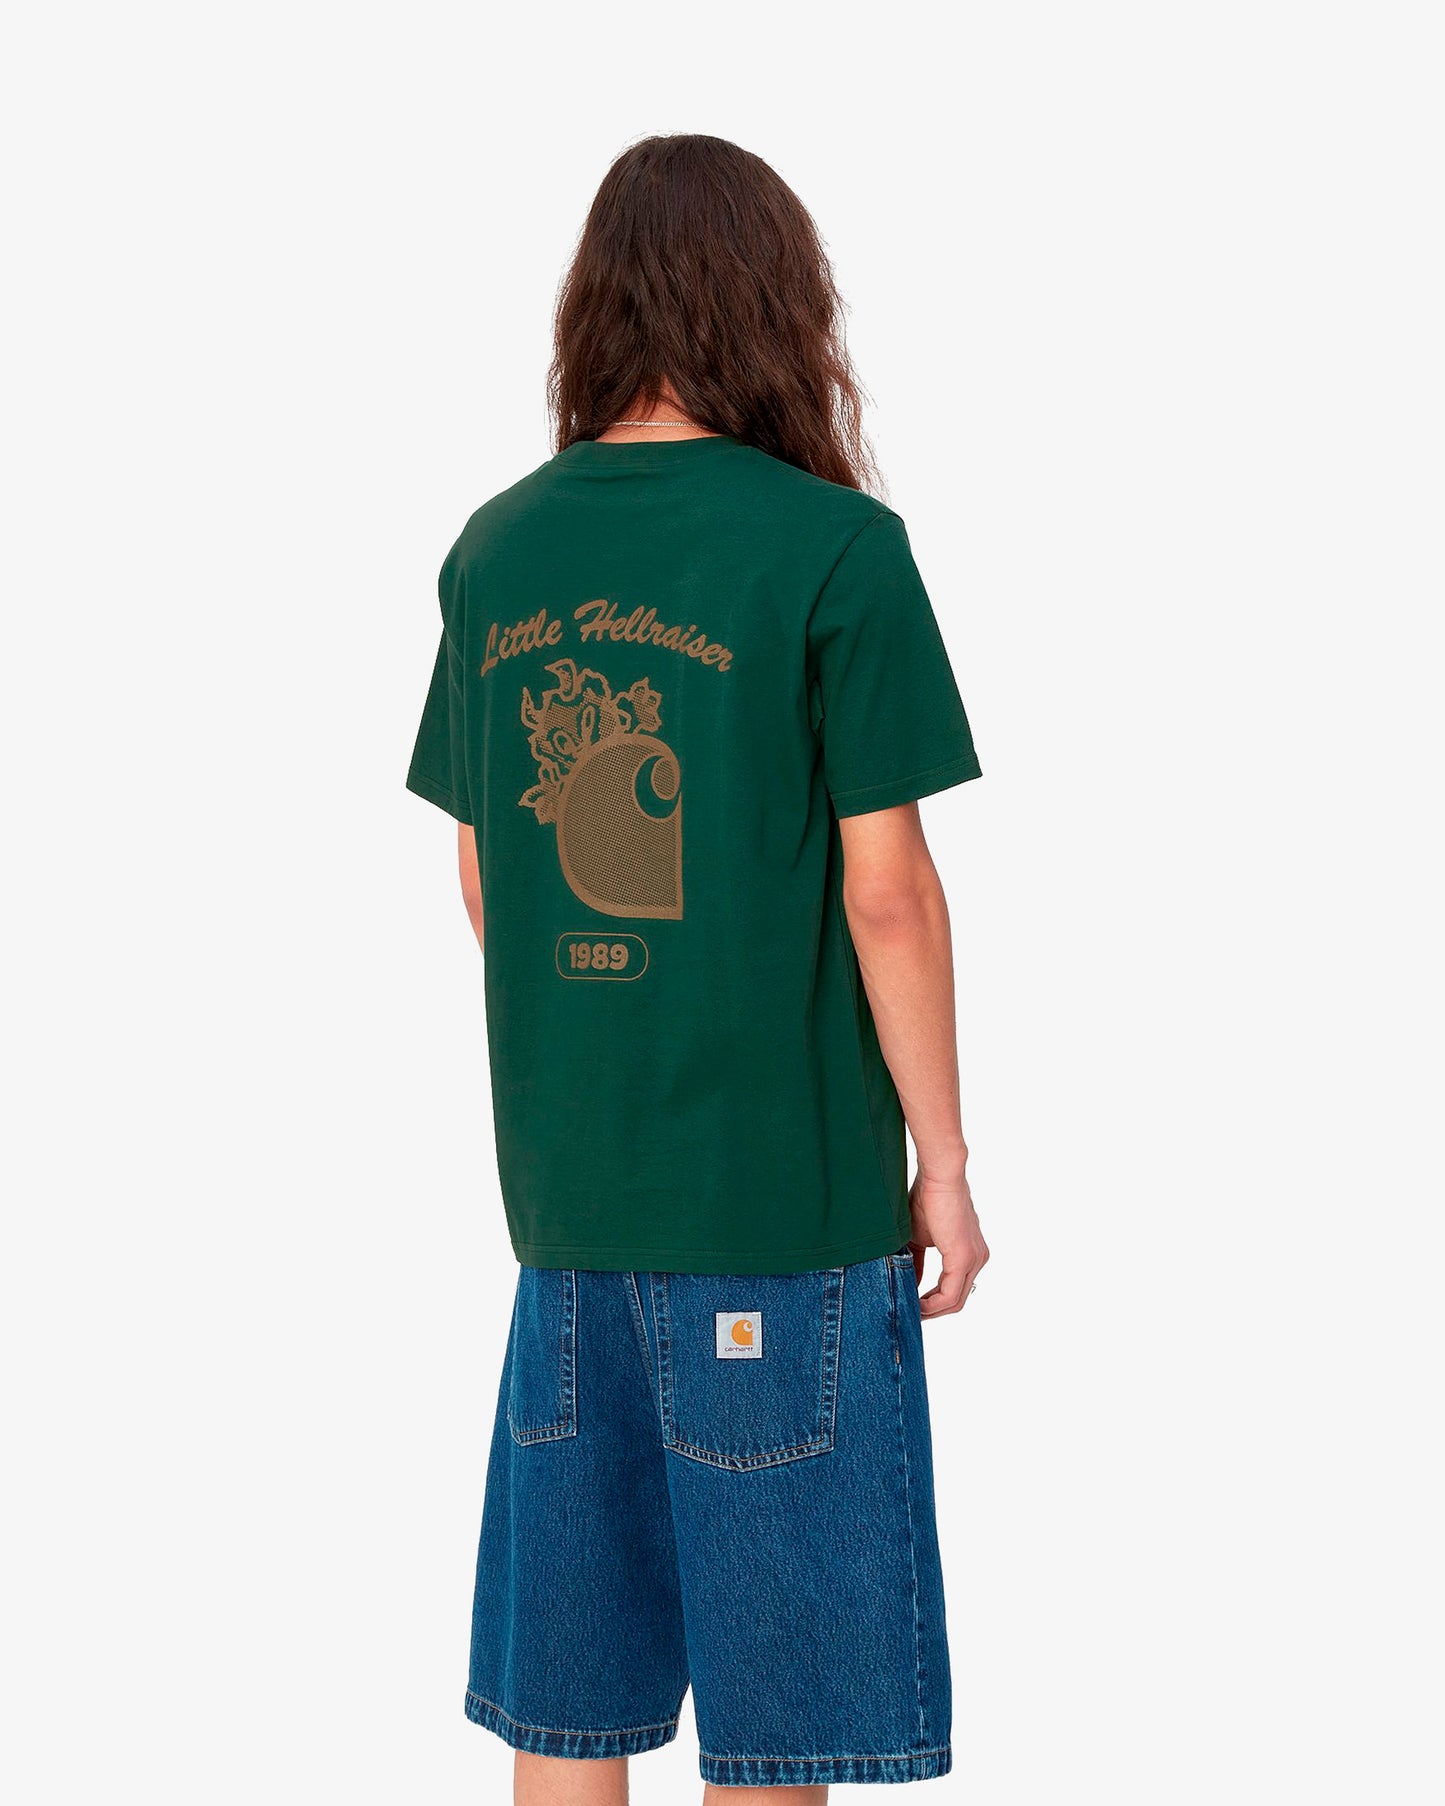 Carhartt WIP  S/S Hellraiser T-Shirt